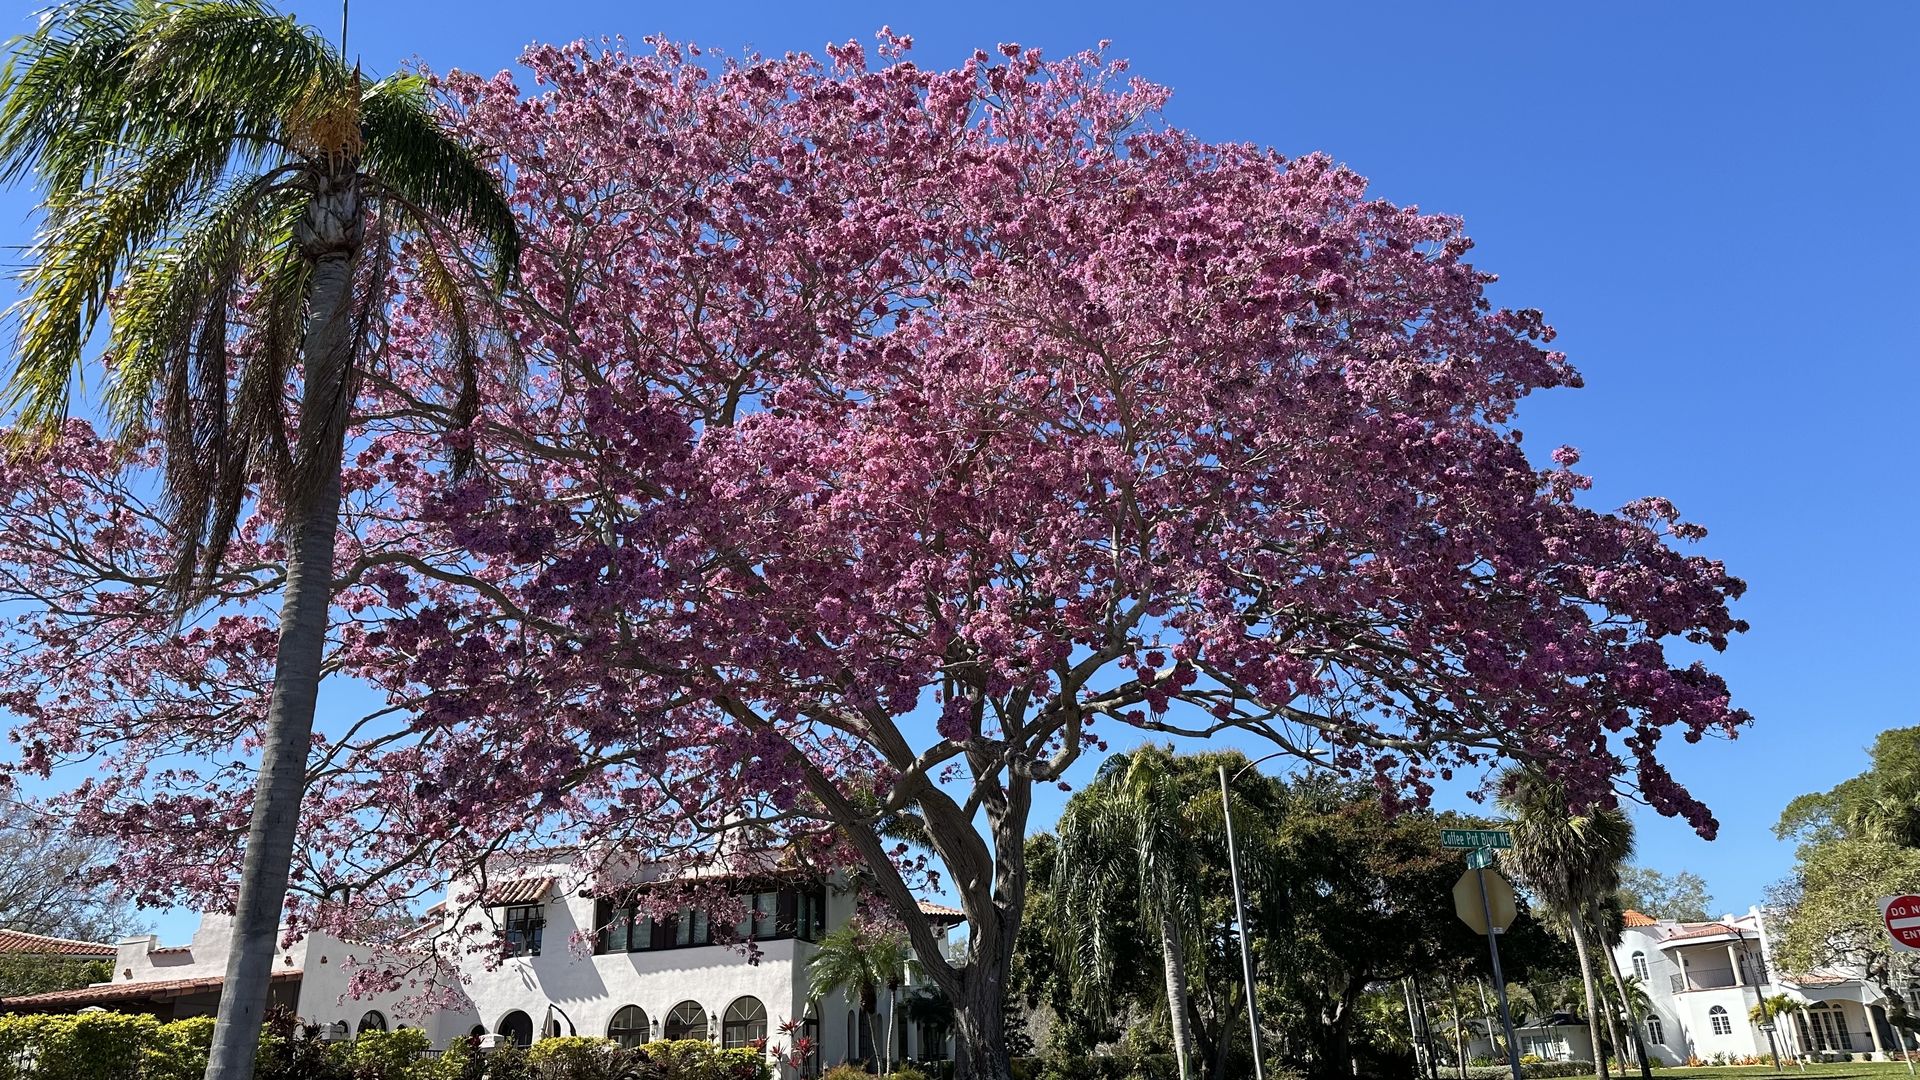 Pink trumpet tree in bloom